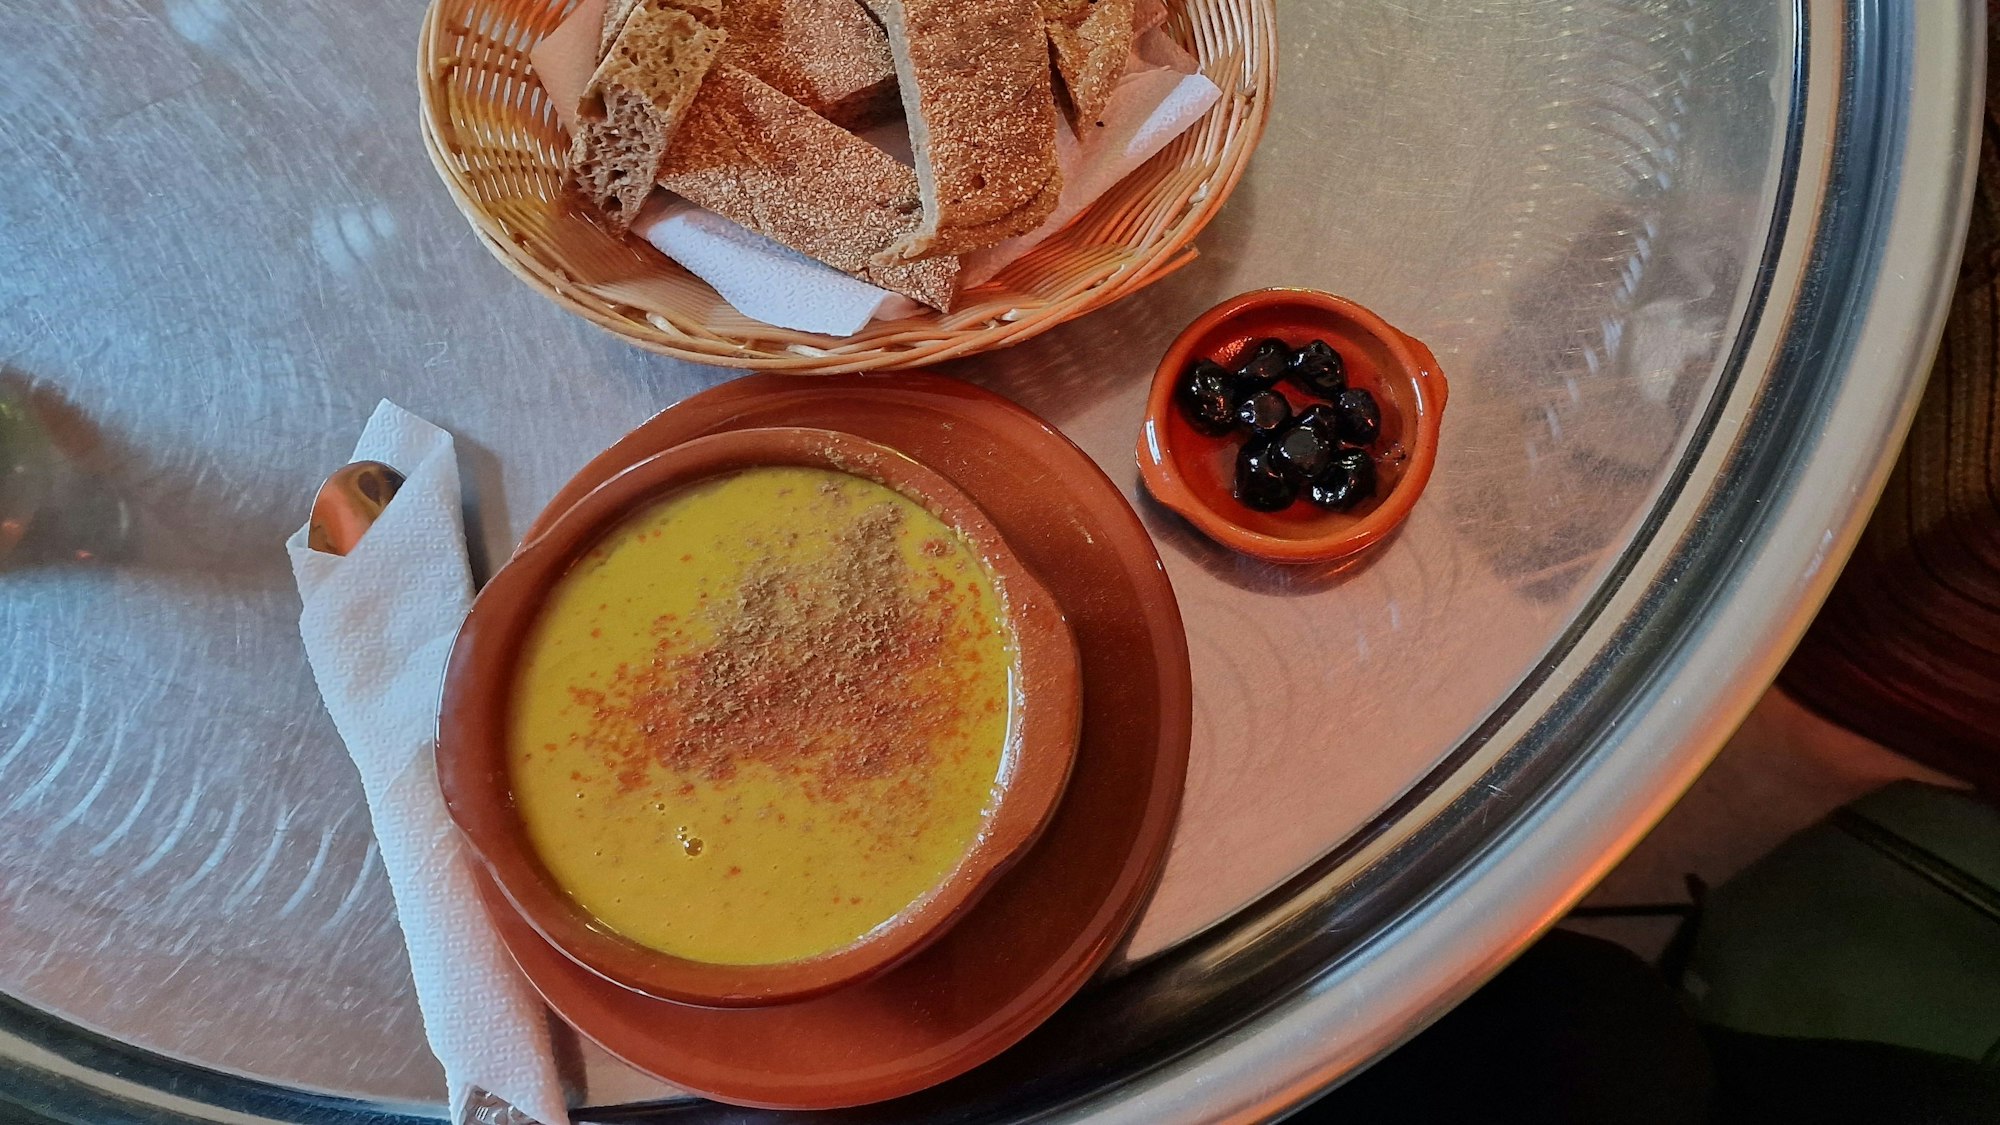 Bissara, marokkanische Spaltbohnensuppe, im Café Casablanca mit Oliven und Brot serviert.